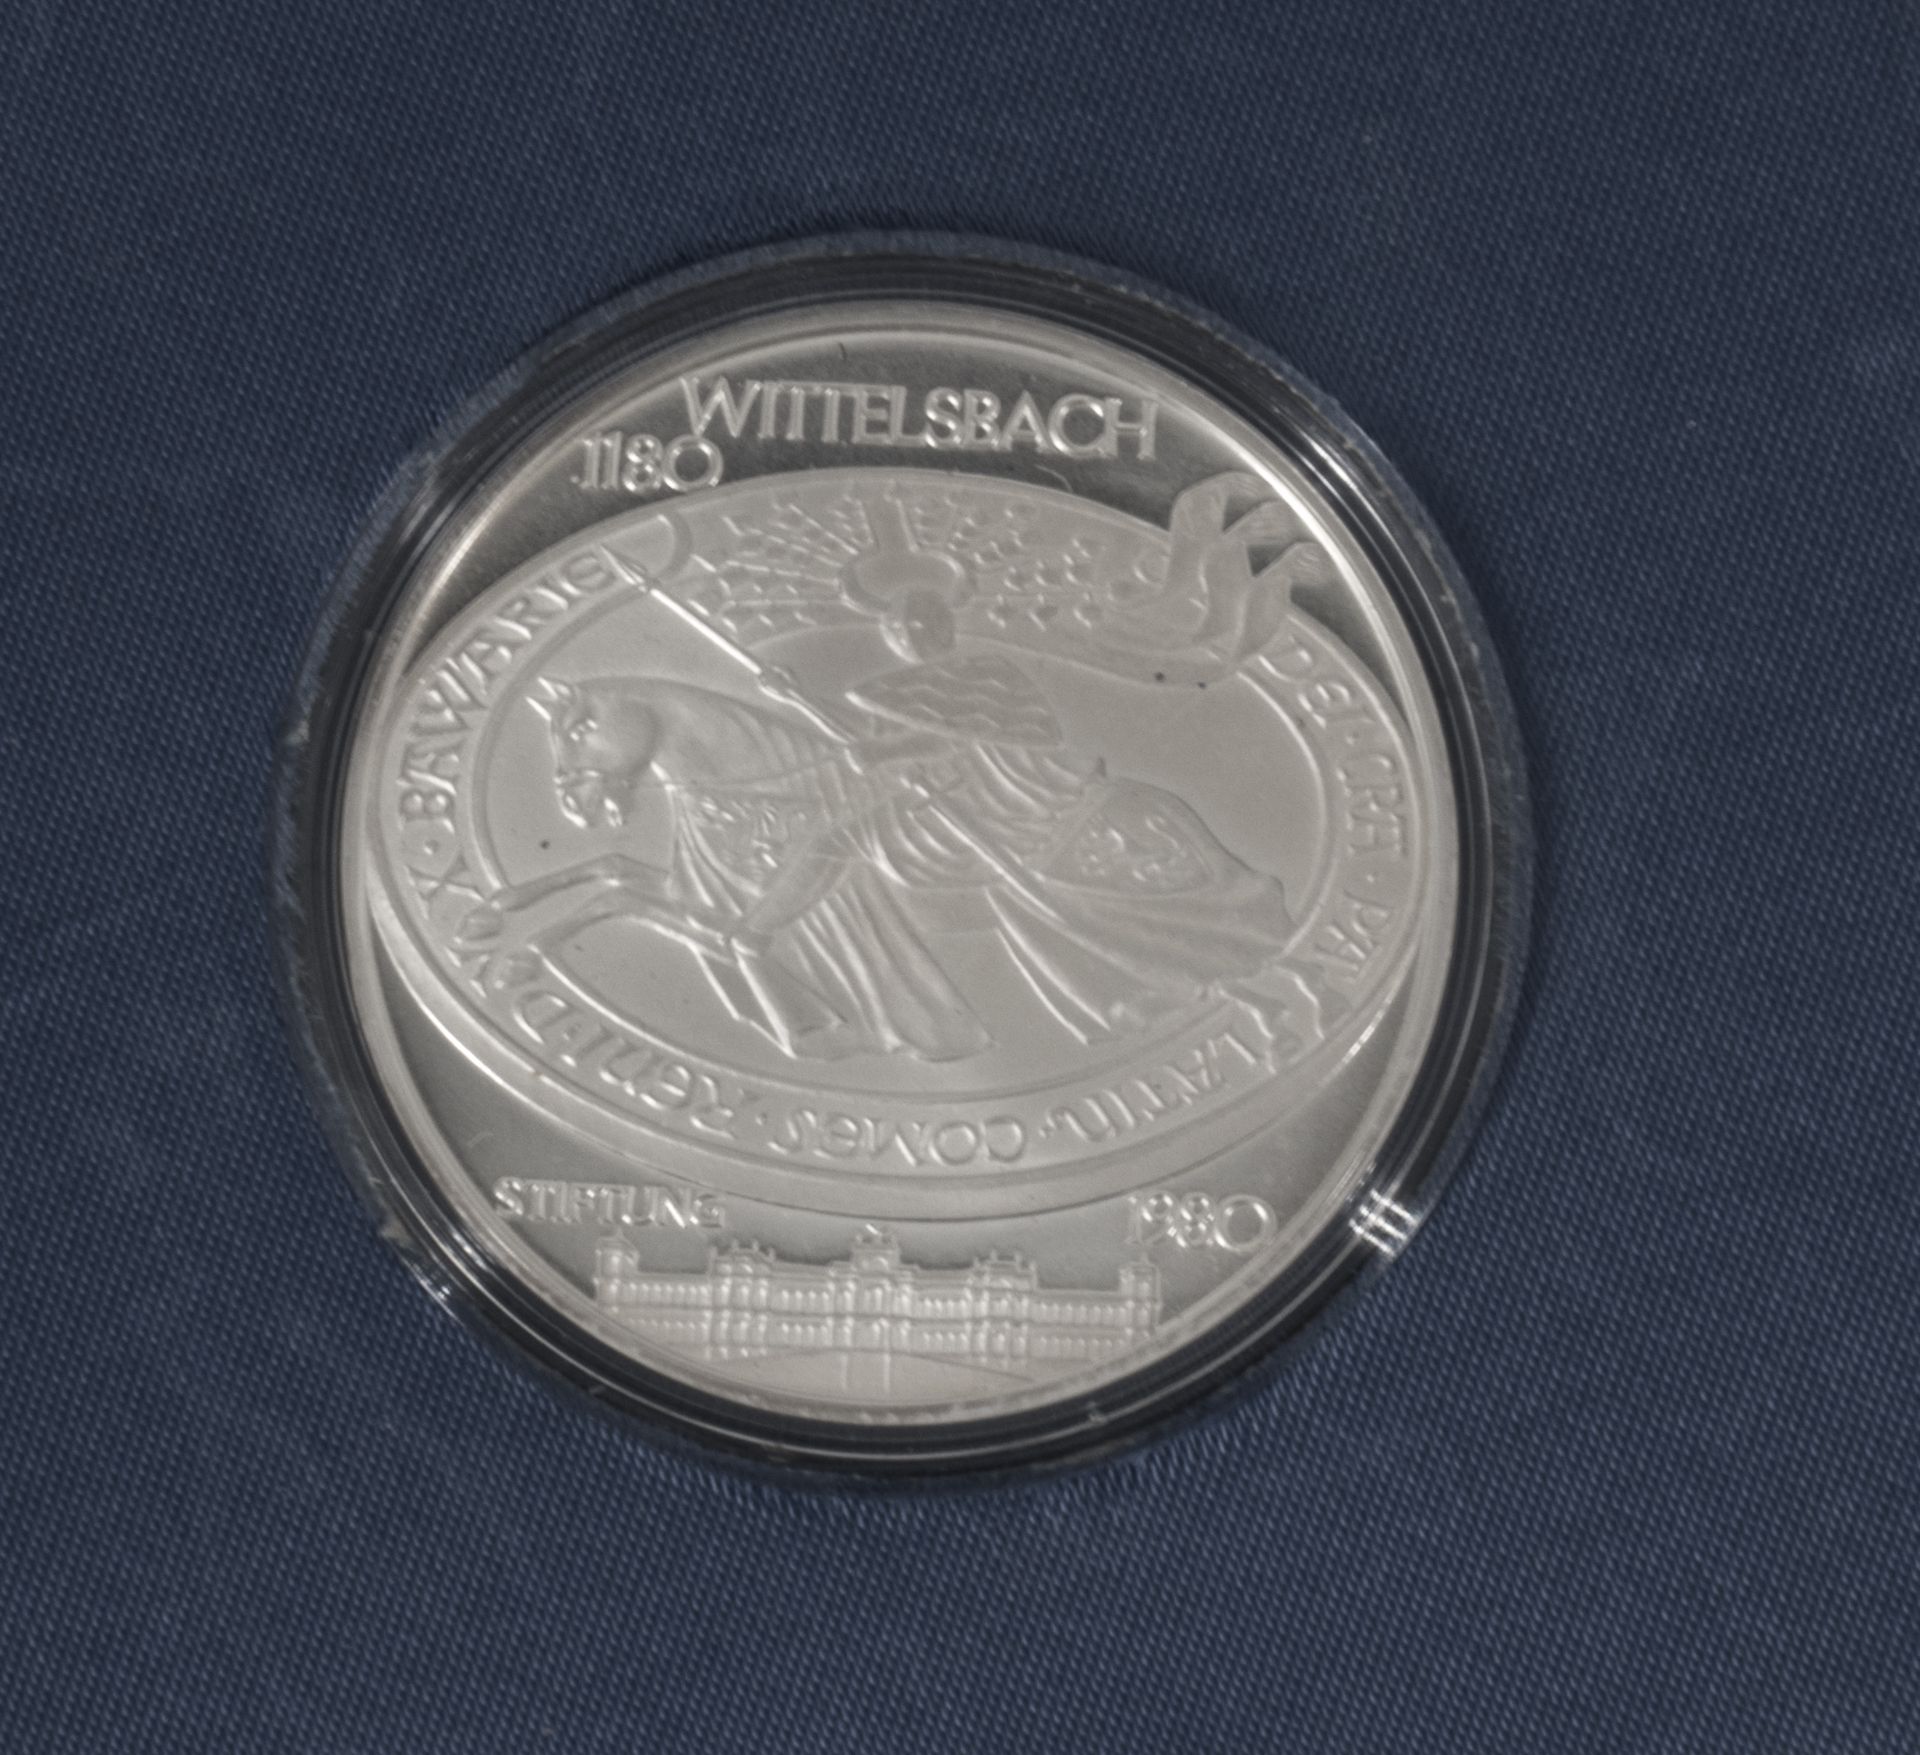 Bayern, Silbermedaille Wittelsbach Stiftung. Silber 1000, Gewicht: ca. 40 g, Durchmesser: ca. 45 mm. - Image 2 of 3